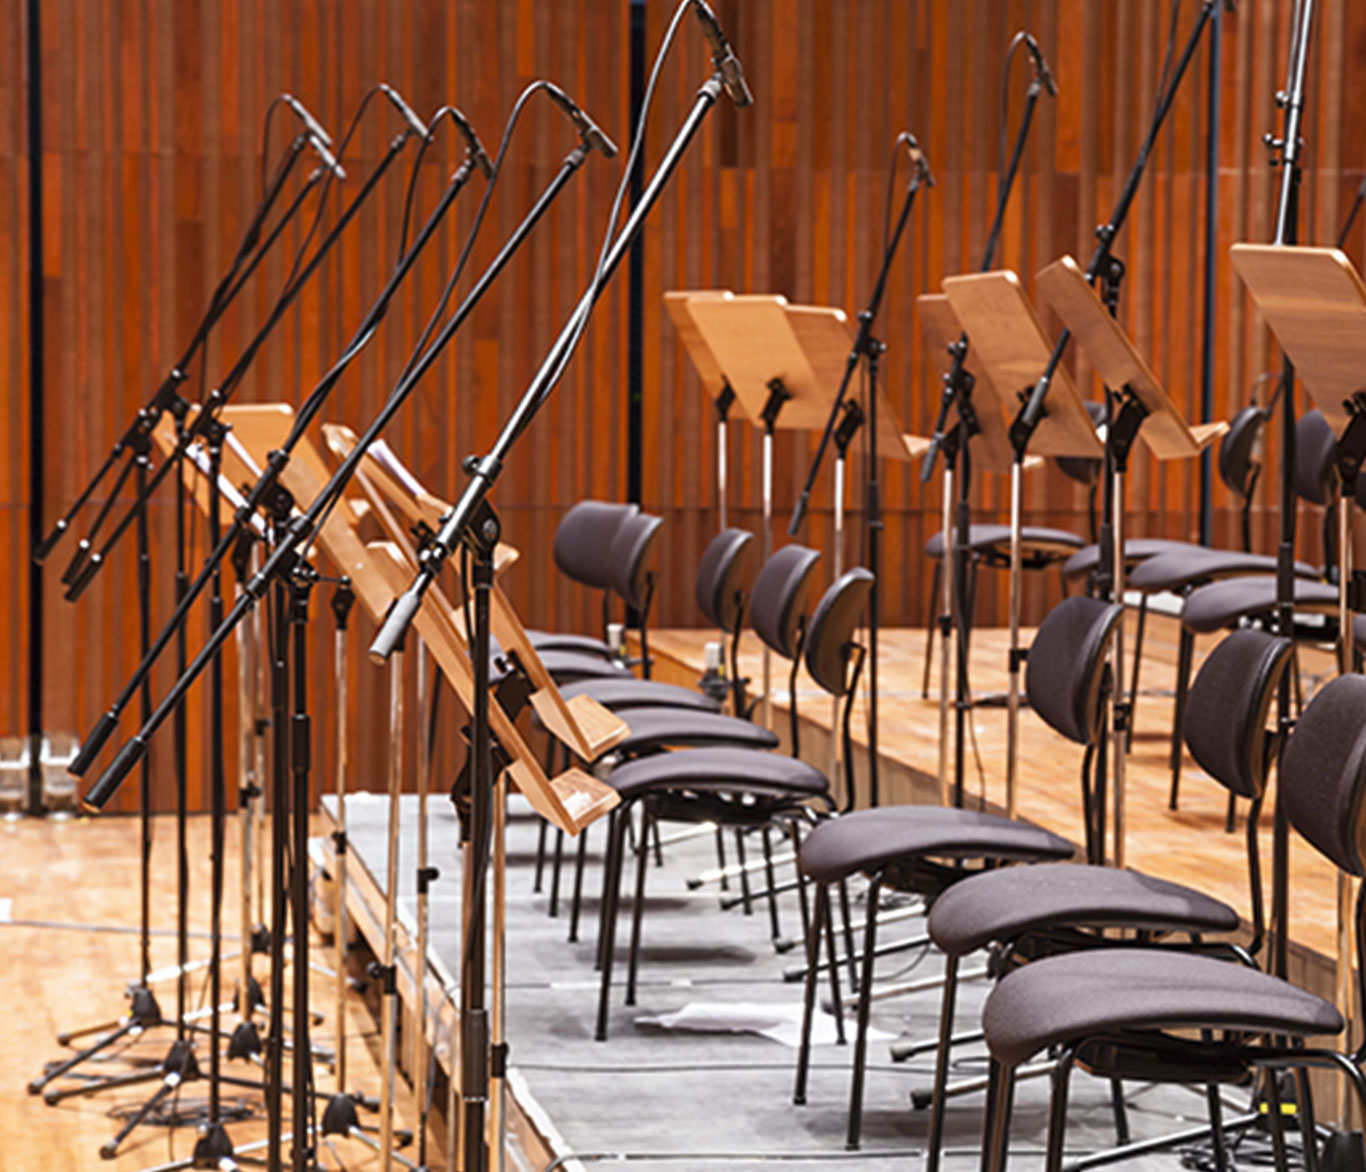 Mikrofone, Notenpulte und Stühle in einem Konzertsaal.